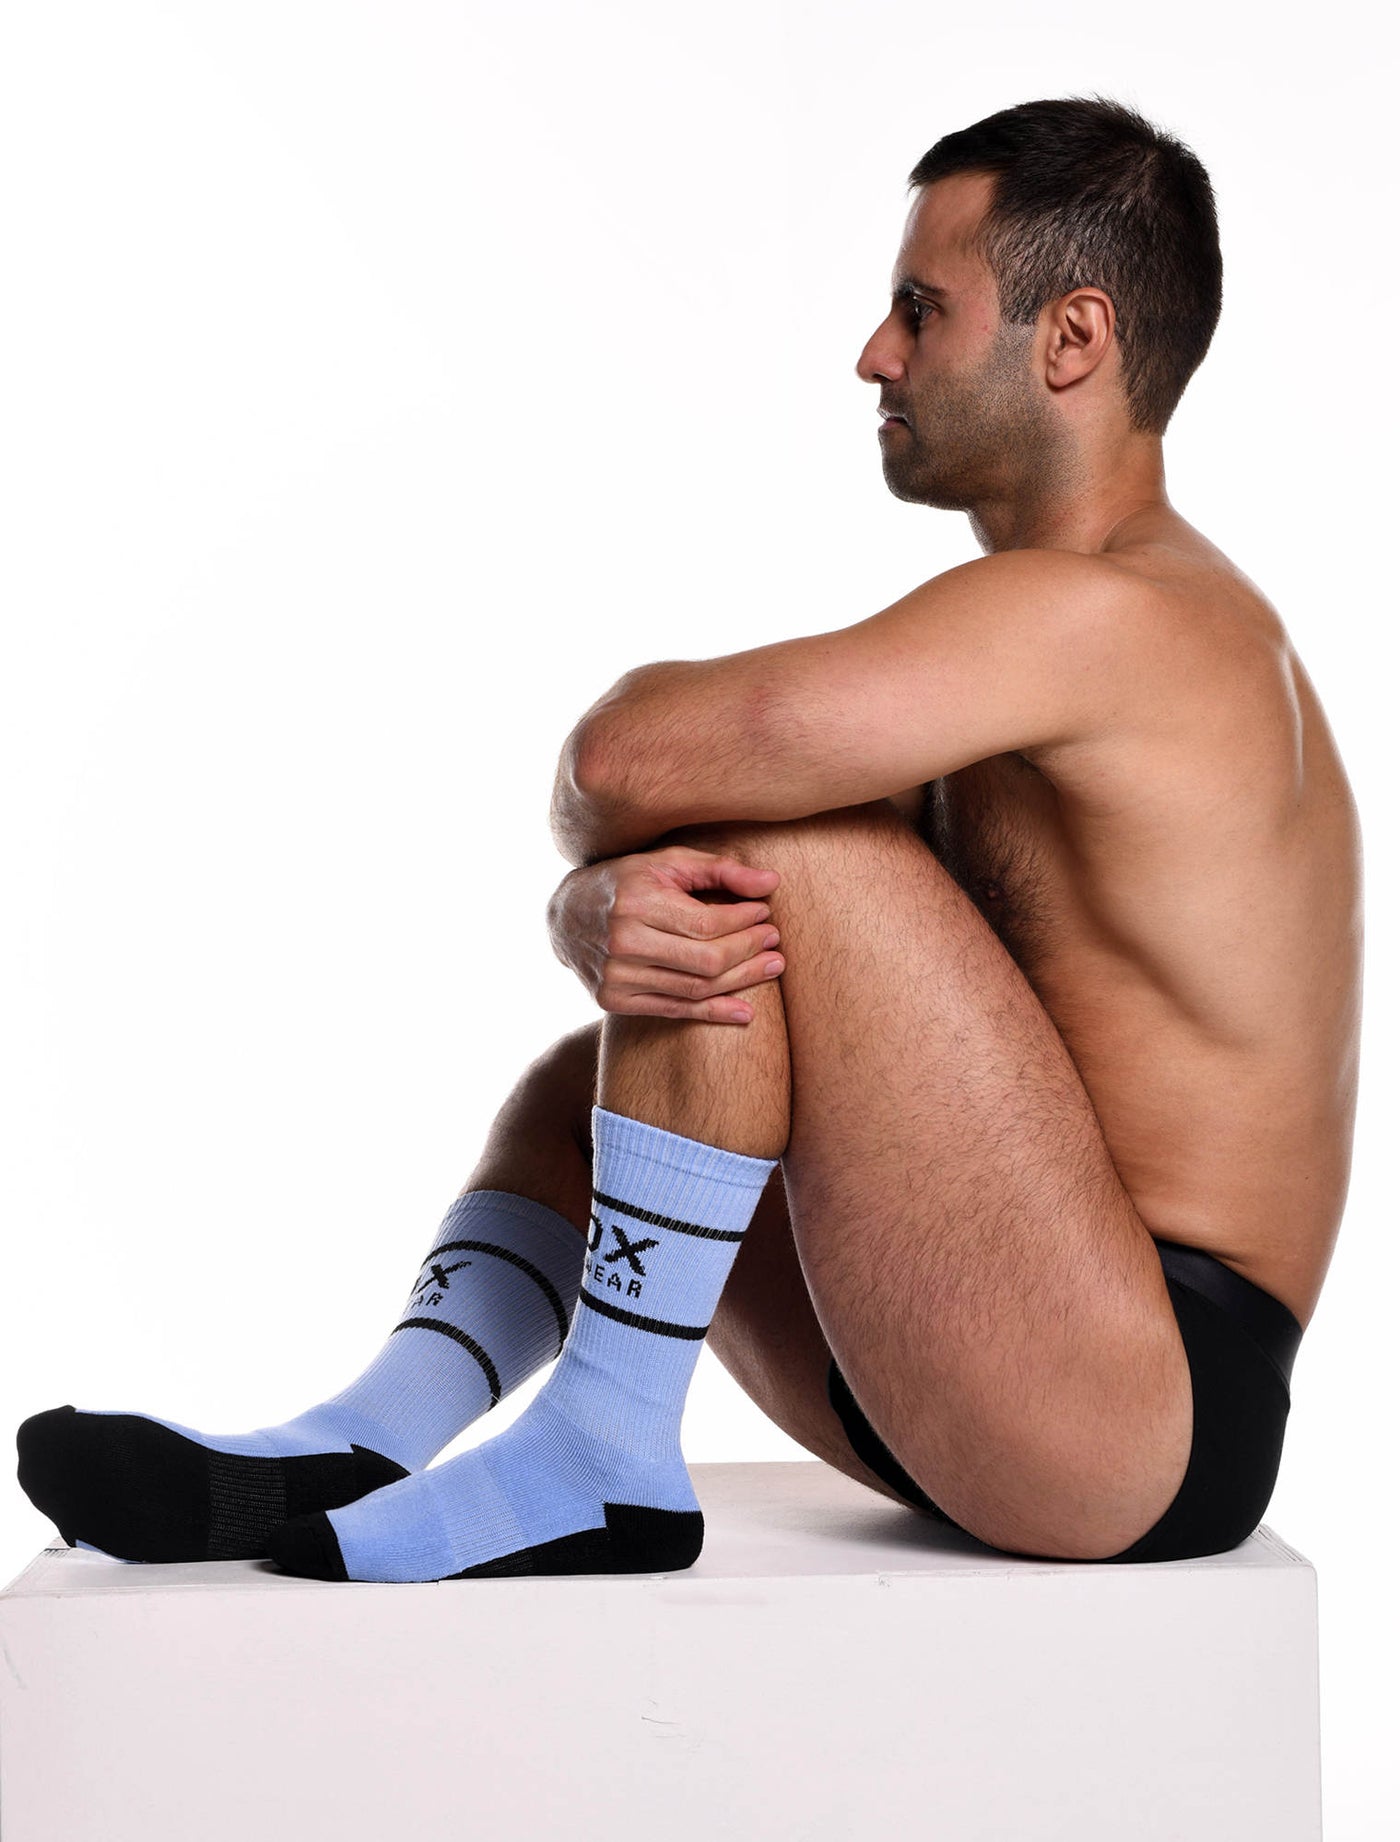 Soft Blue Lux Sports Socks